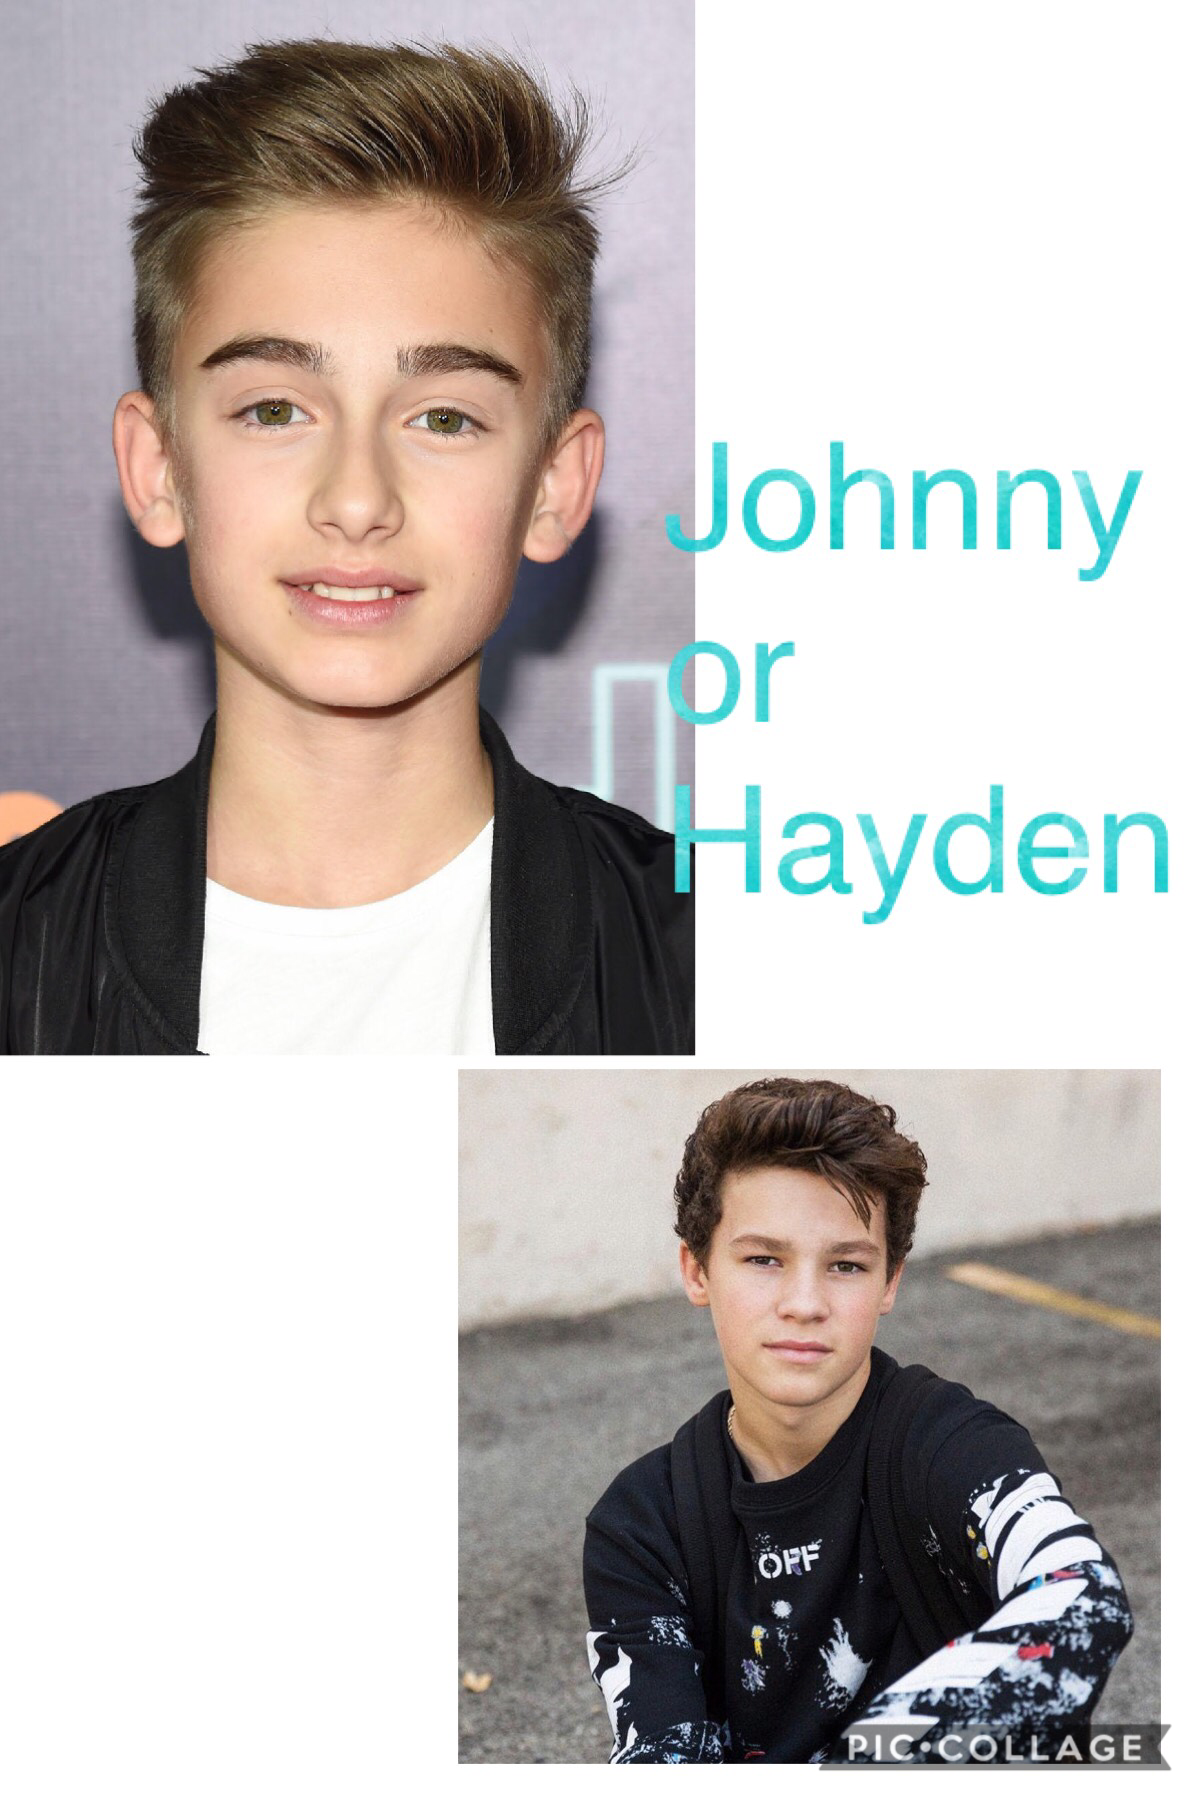 Johnny or Hayden